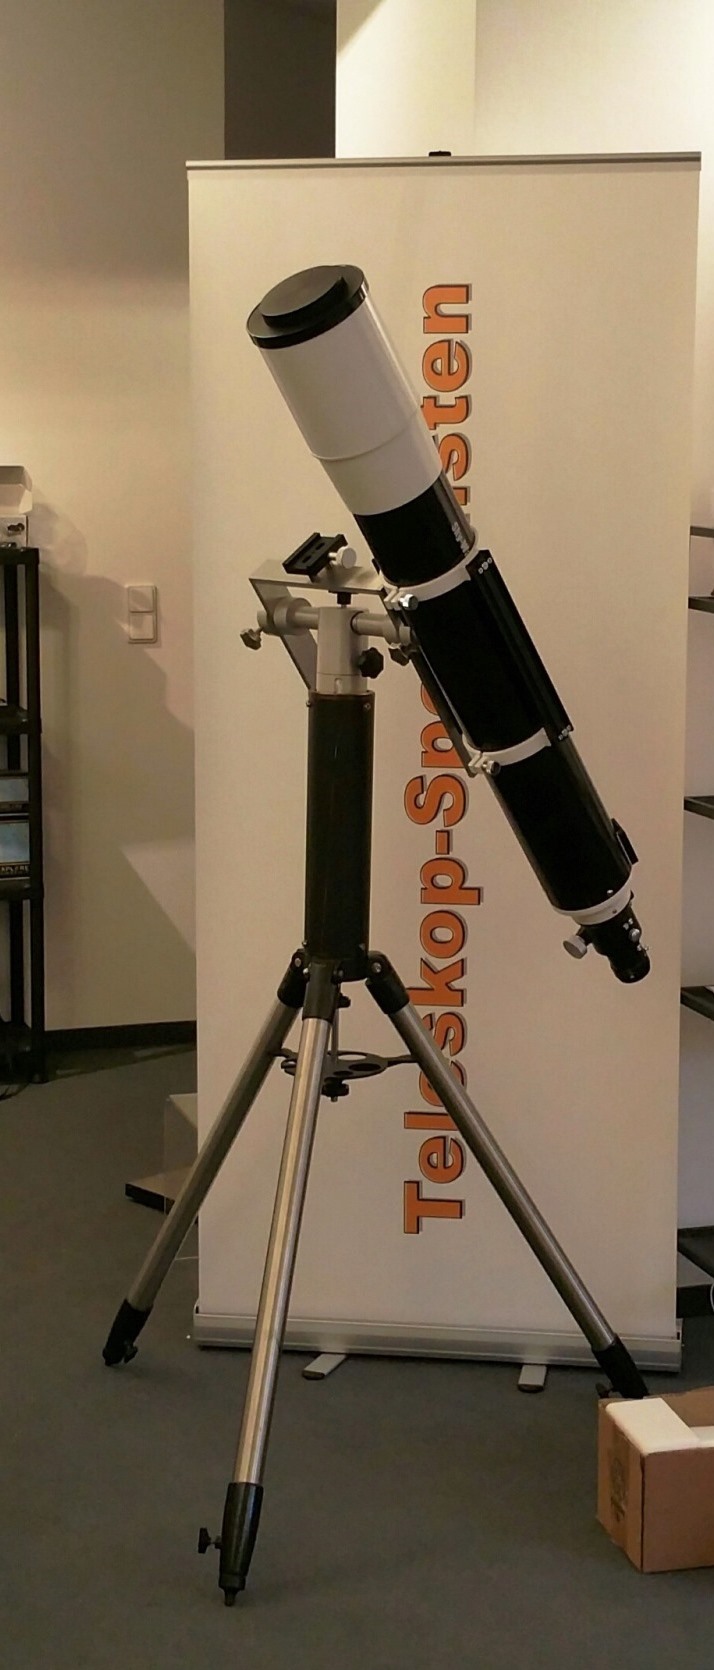 Spezialisten für Teleskope, Ferngläser in Beratung und Verkauf